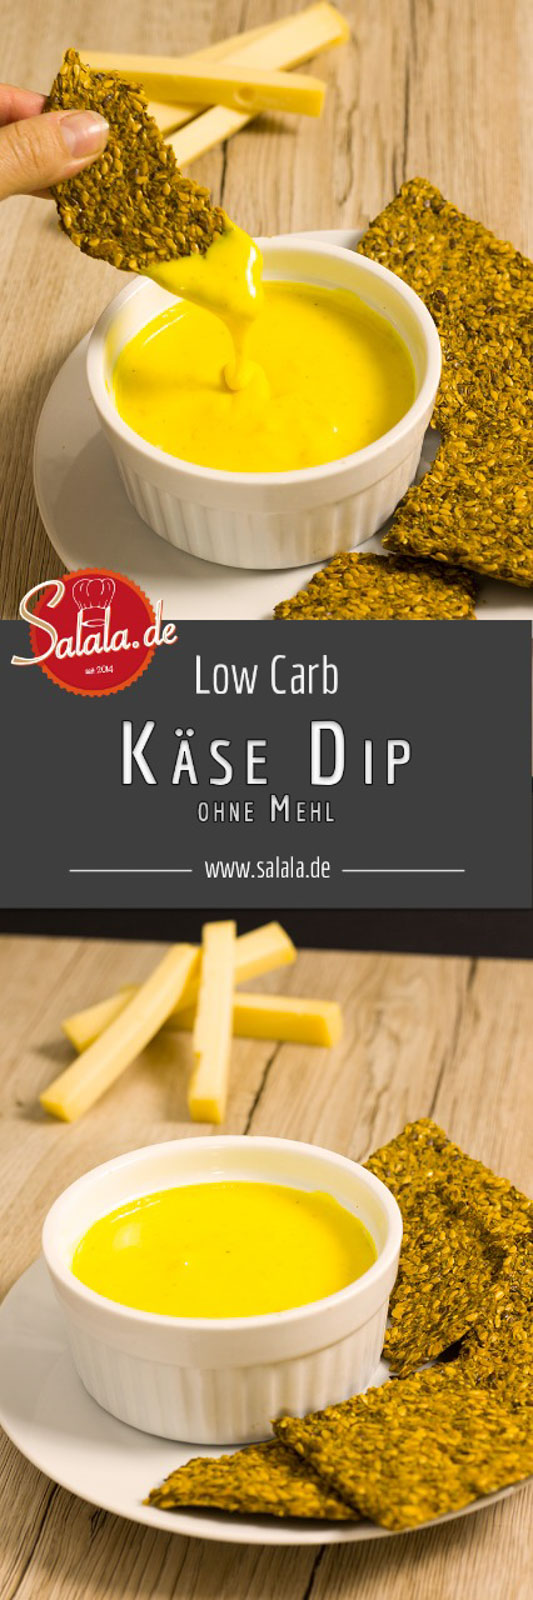 Käse-Dip selber machen Cheese Dip für Nachos ohne Mehl zuckerfrei low carb salala.de Rezept